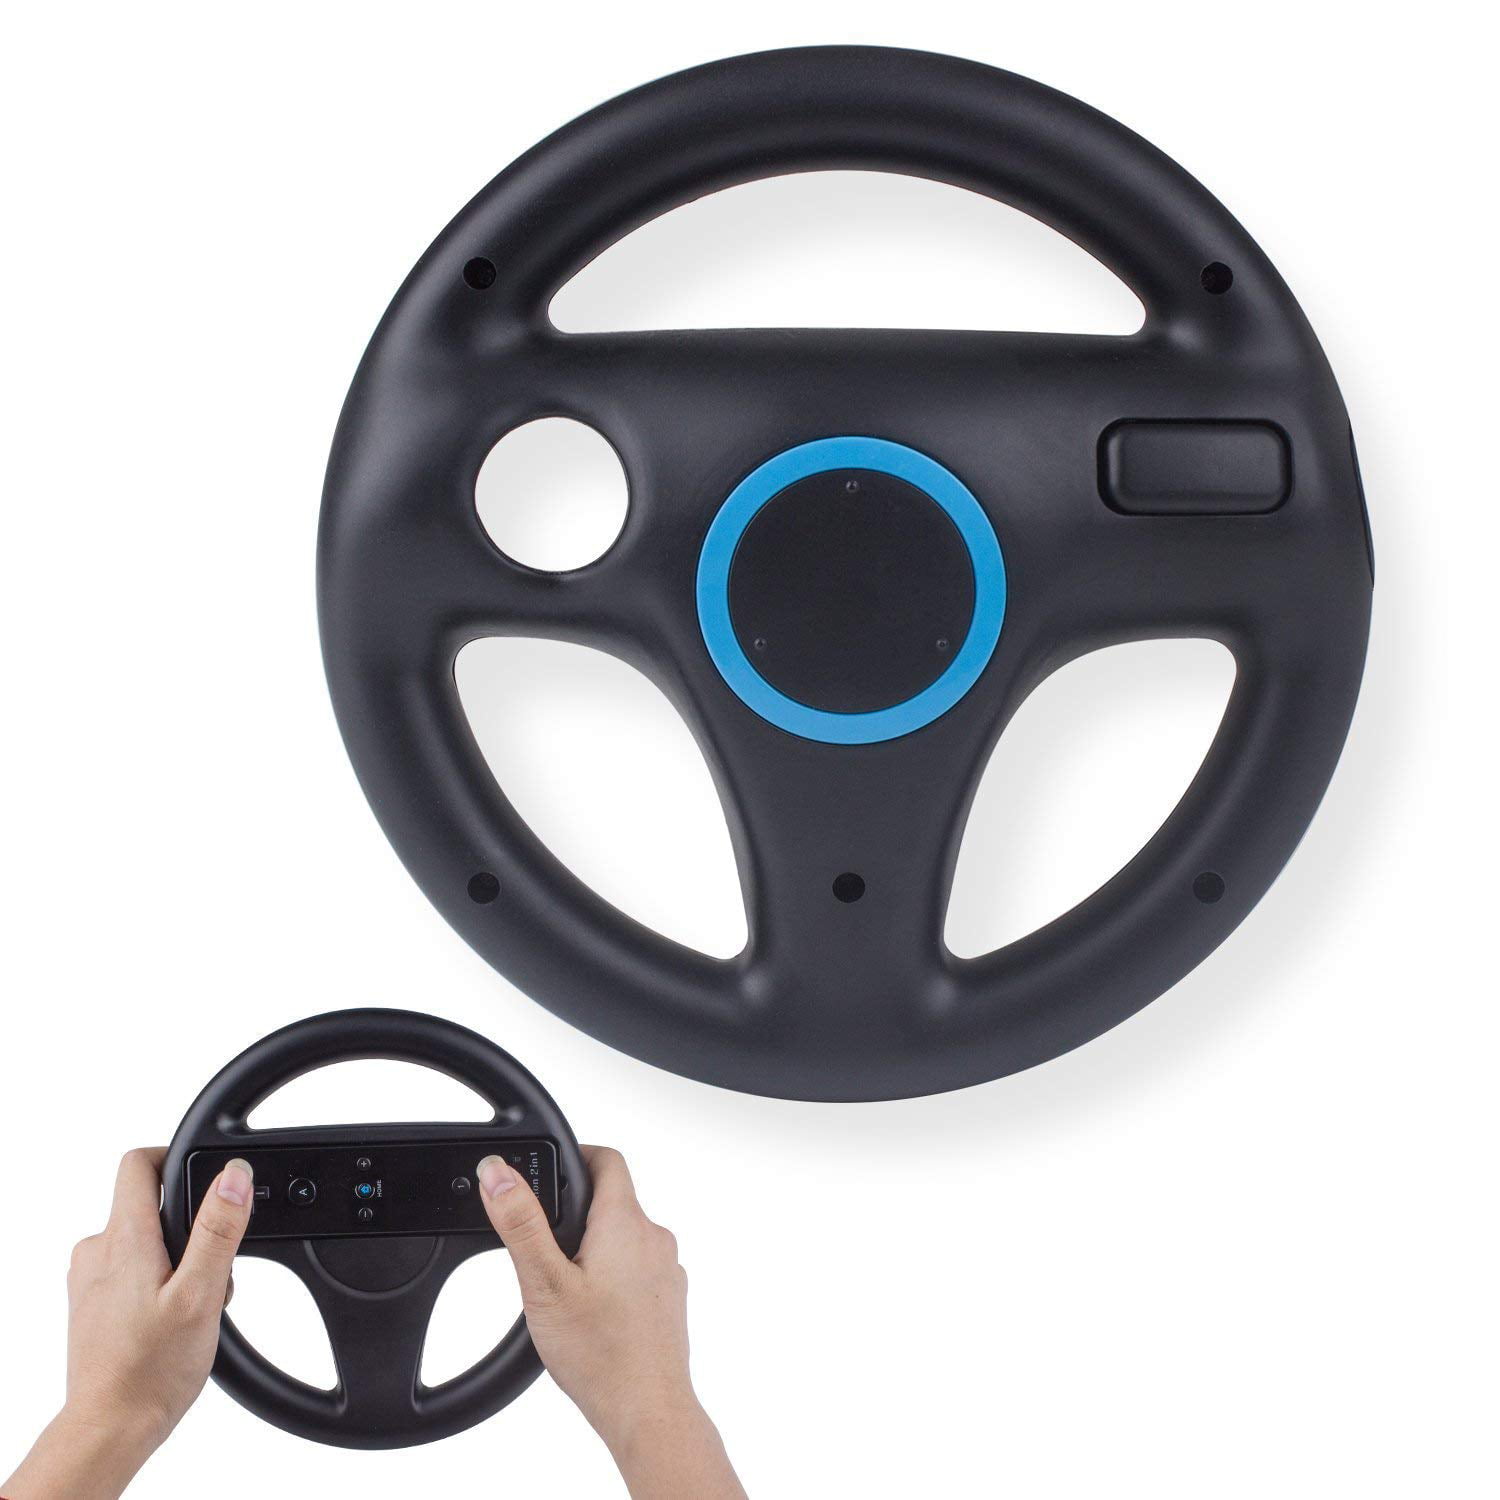 Weglaten Afzonderlijk Origineel Beastron Mario Kart Racing Wheel for Nintendo Wii, 2 Pack (Black) -  Walmart.com